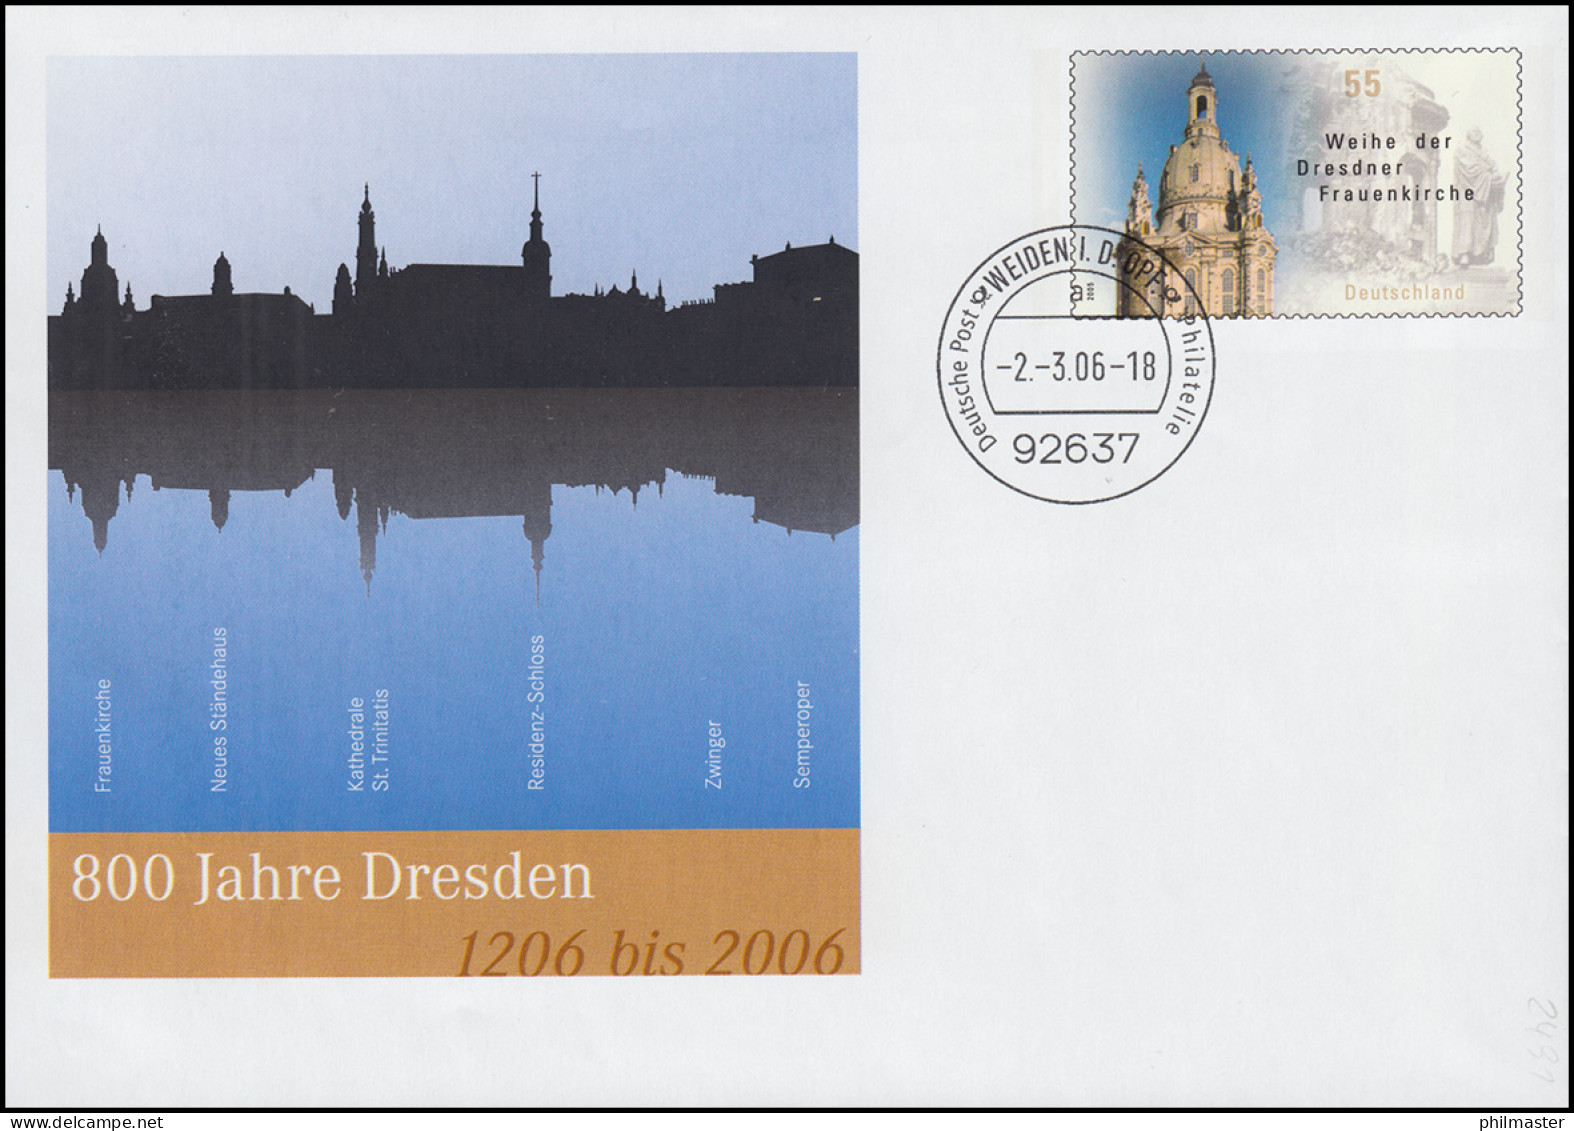 USo 112 Jubiläum 800 Jahre Dresden 2006, VS-O Weiden 2.3.06 - Briefomslagen - Ongebruikt